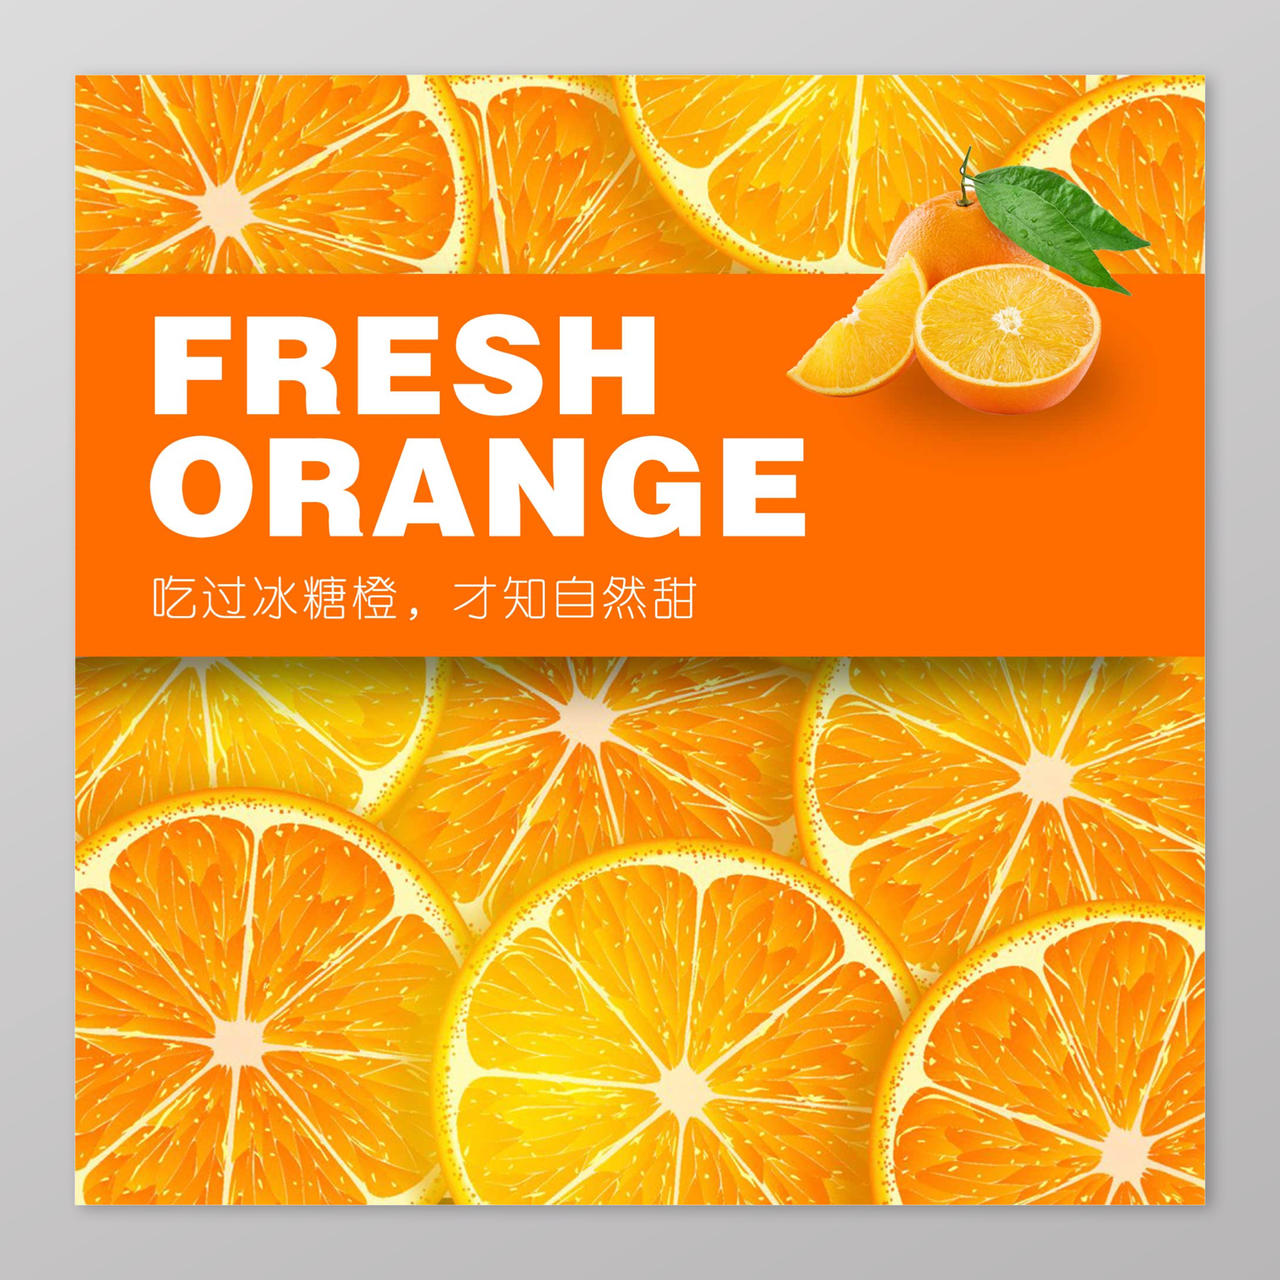 冰糖橙橙子生鲜新鲜水果海报